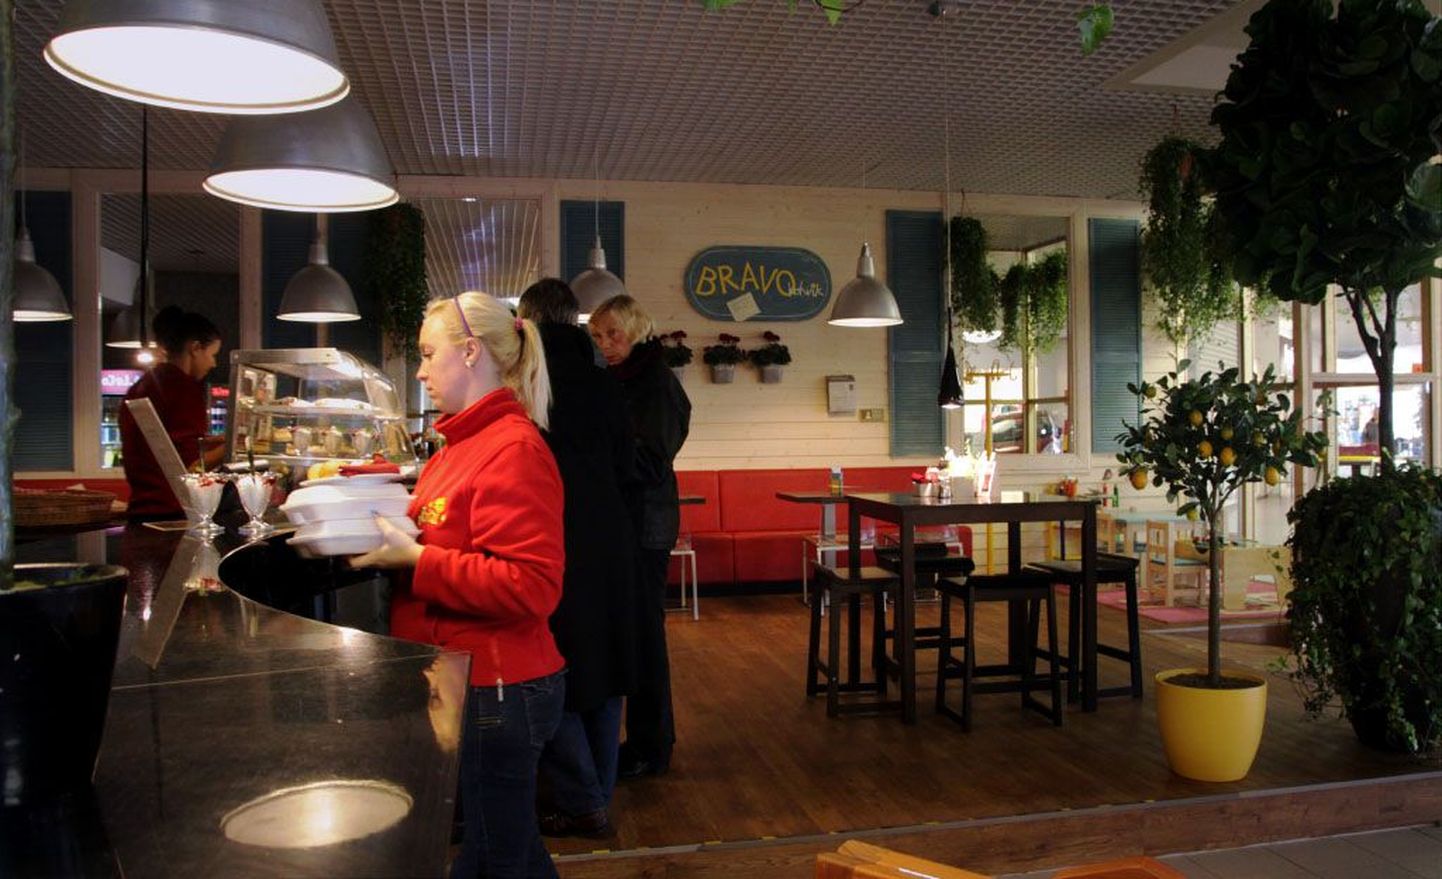 Kaubamajakas avatud Bravo kohvik pakub Vahemere maadest inspireeritud menüüd.